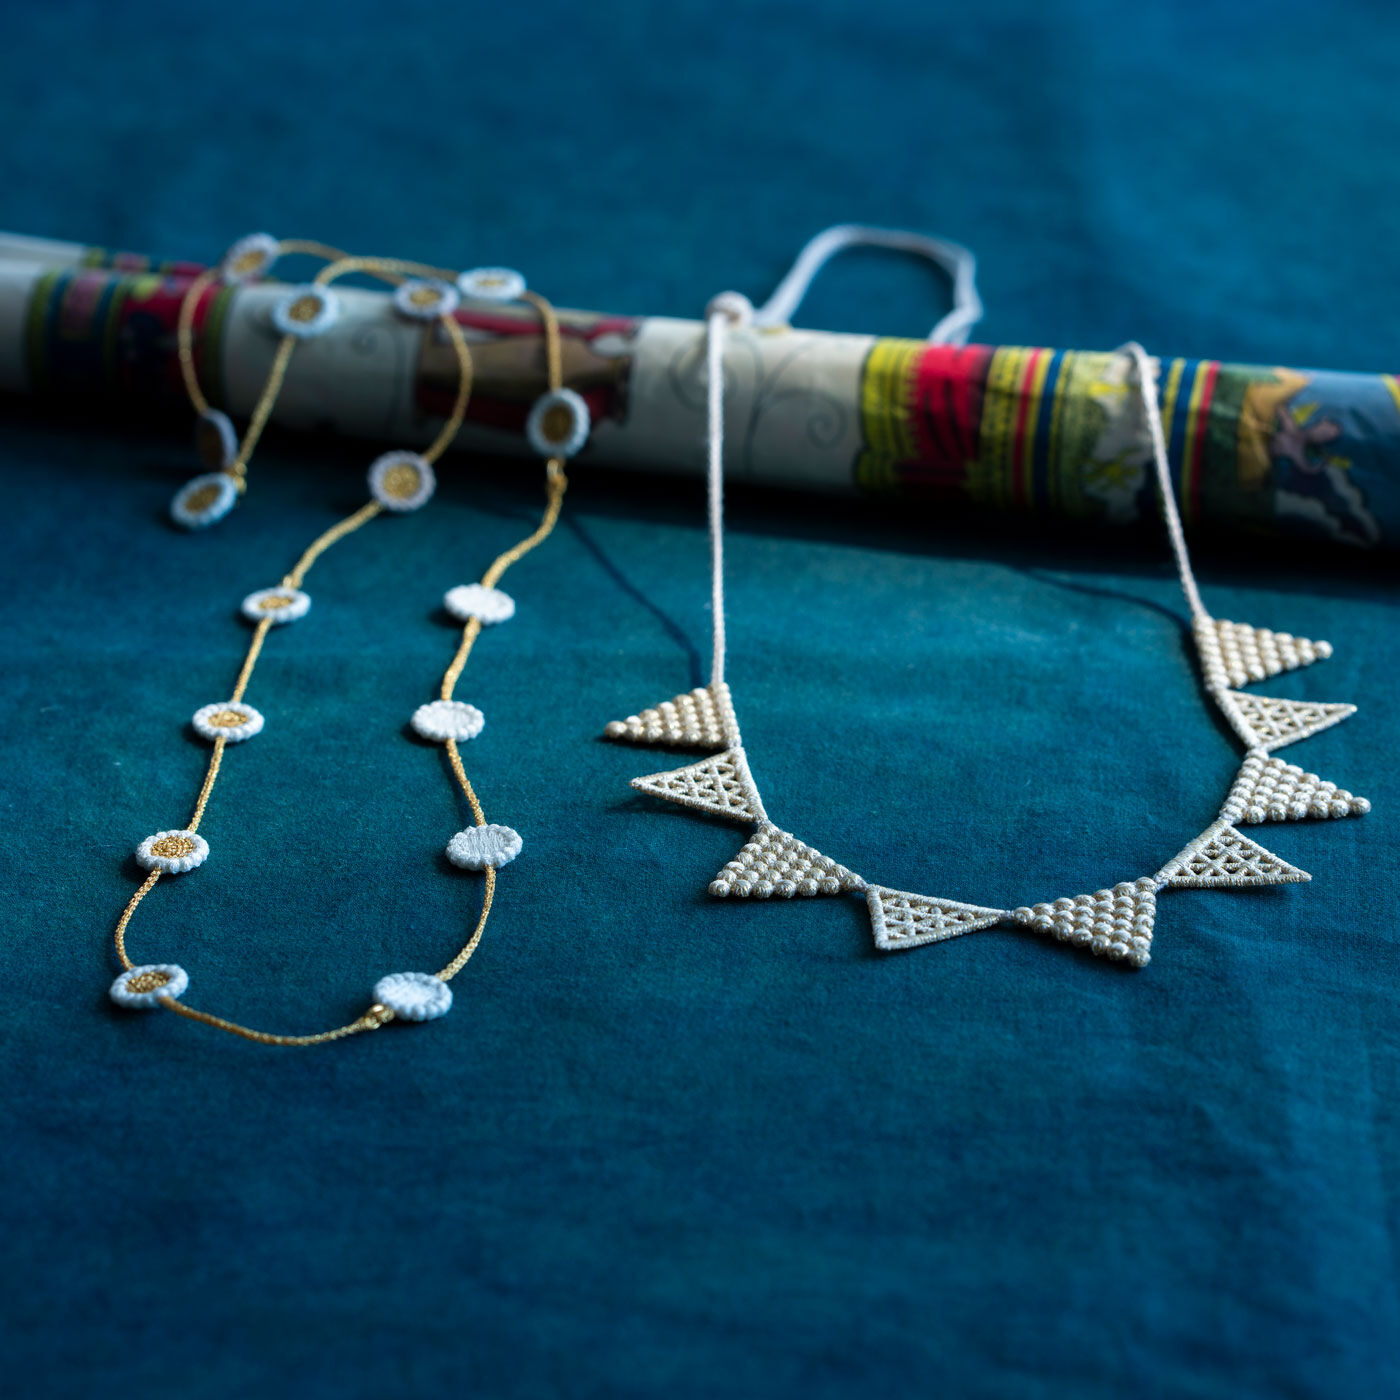 ＆Stories|群馬の刺繍工房が作った　糸の宝石のレースフラワーネックレス〈ゴールド色〉|今回新発売の〈000 / トリプル・オゥ〉の美しい糸の宝石ネックレスは2種類。